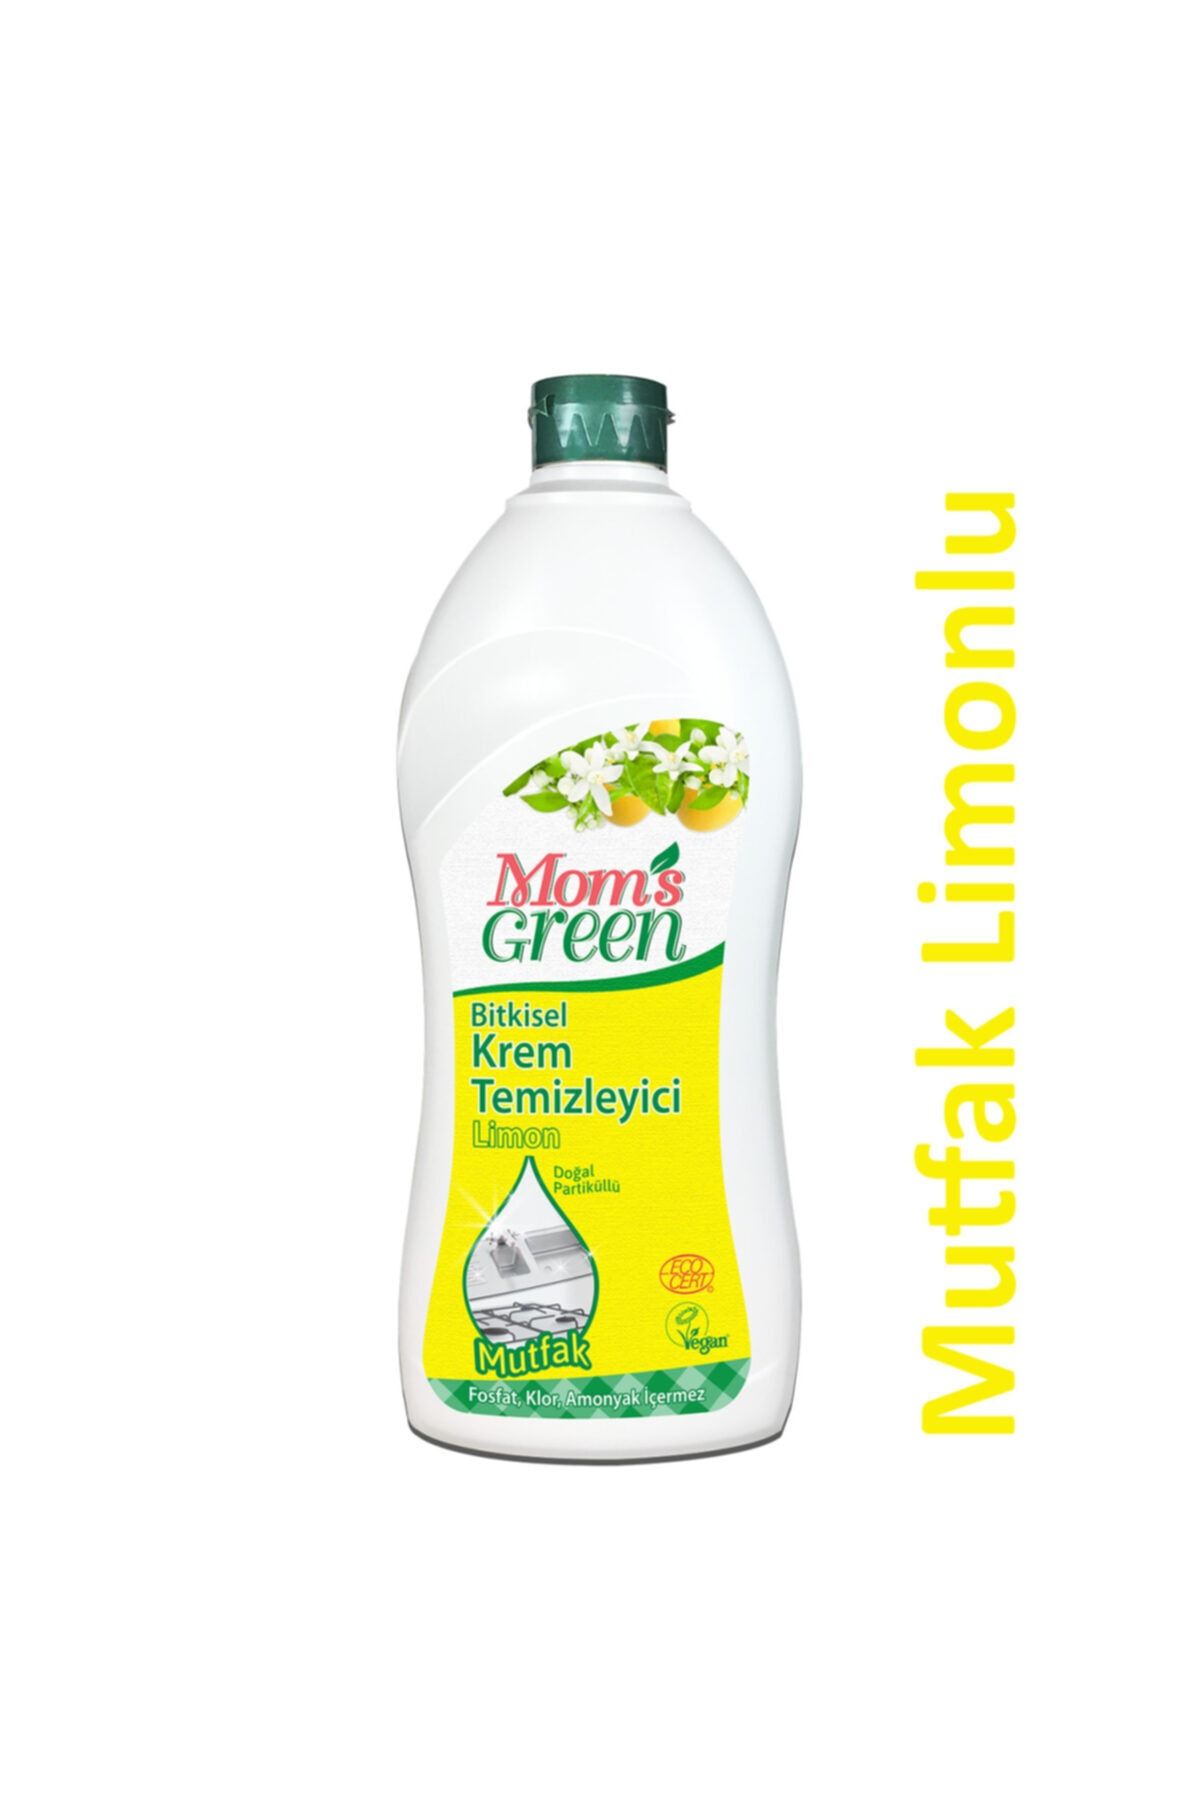 Mom's Green Bitkisel Krem Temizleyici Mutfak  Limon